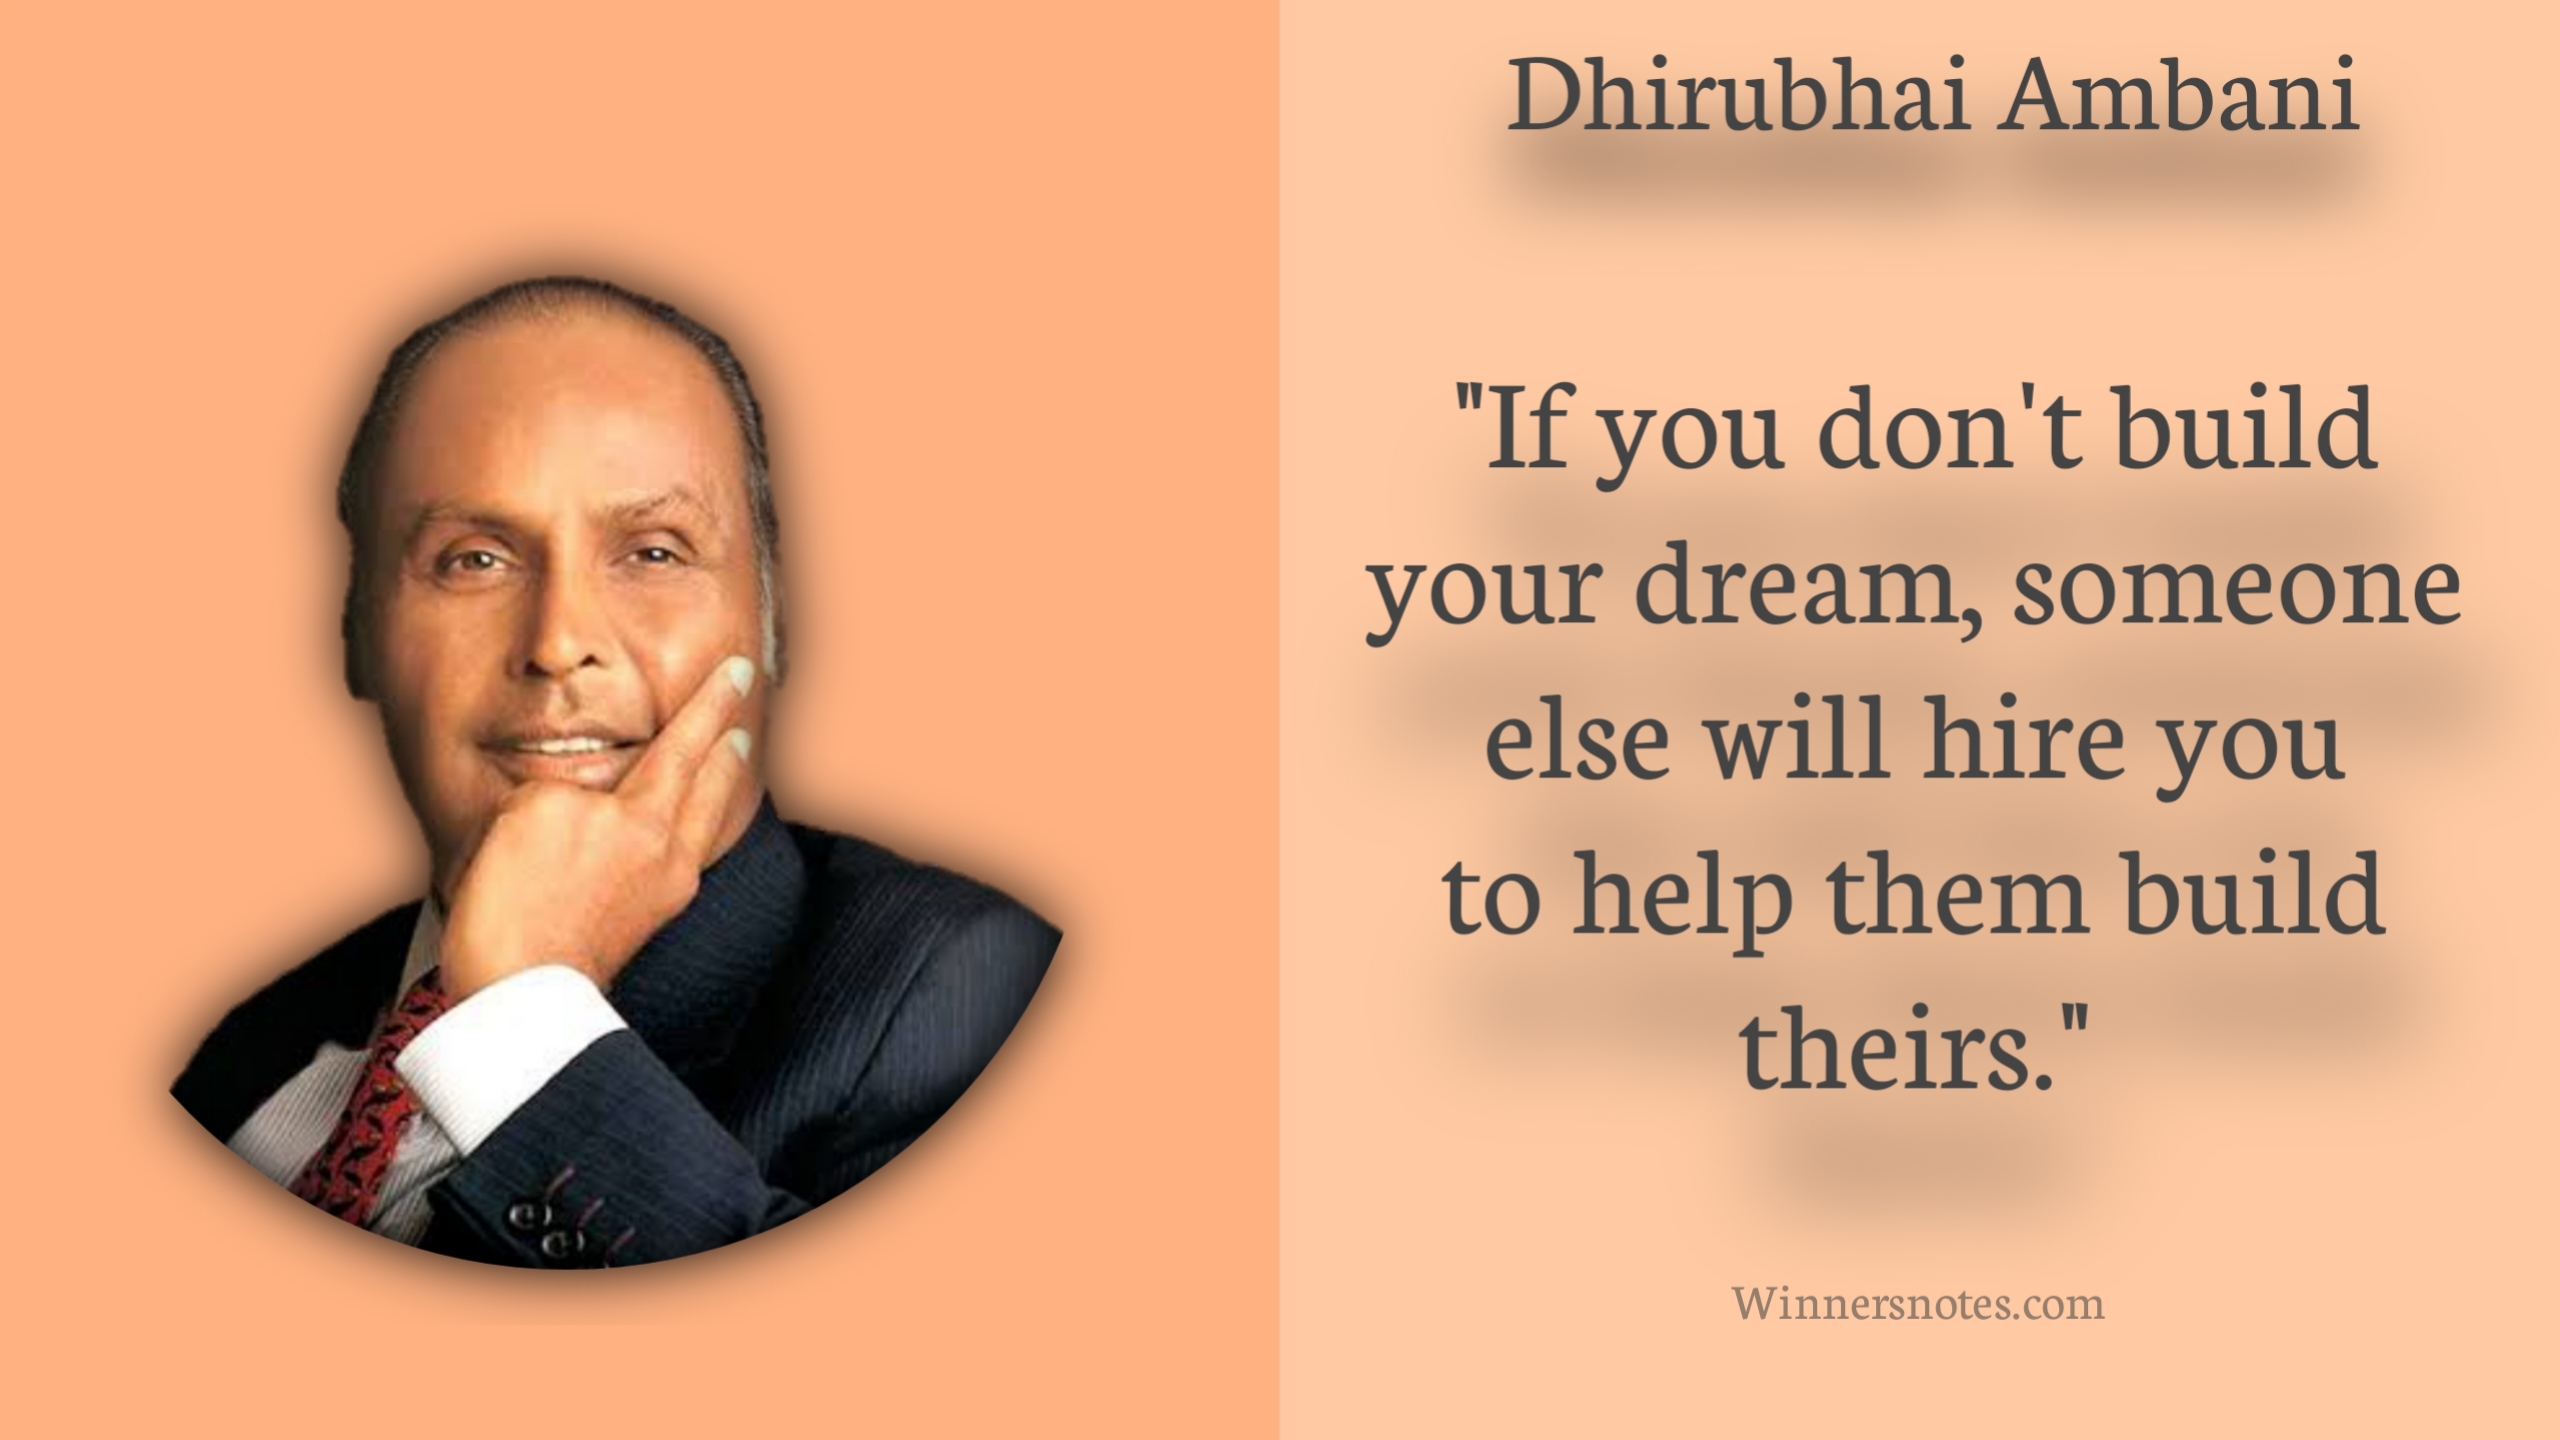 Dhirubhai Ambani inspiration quotes